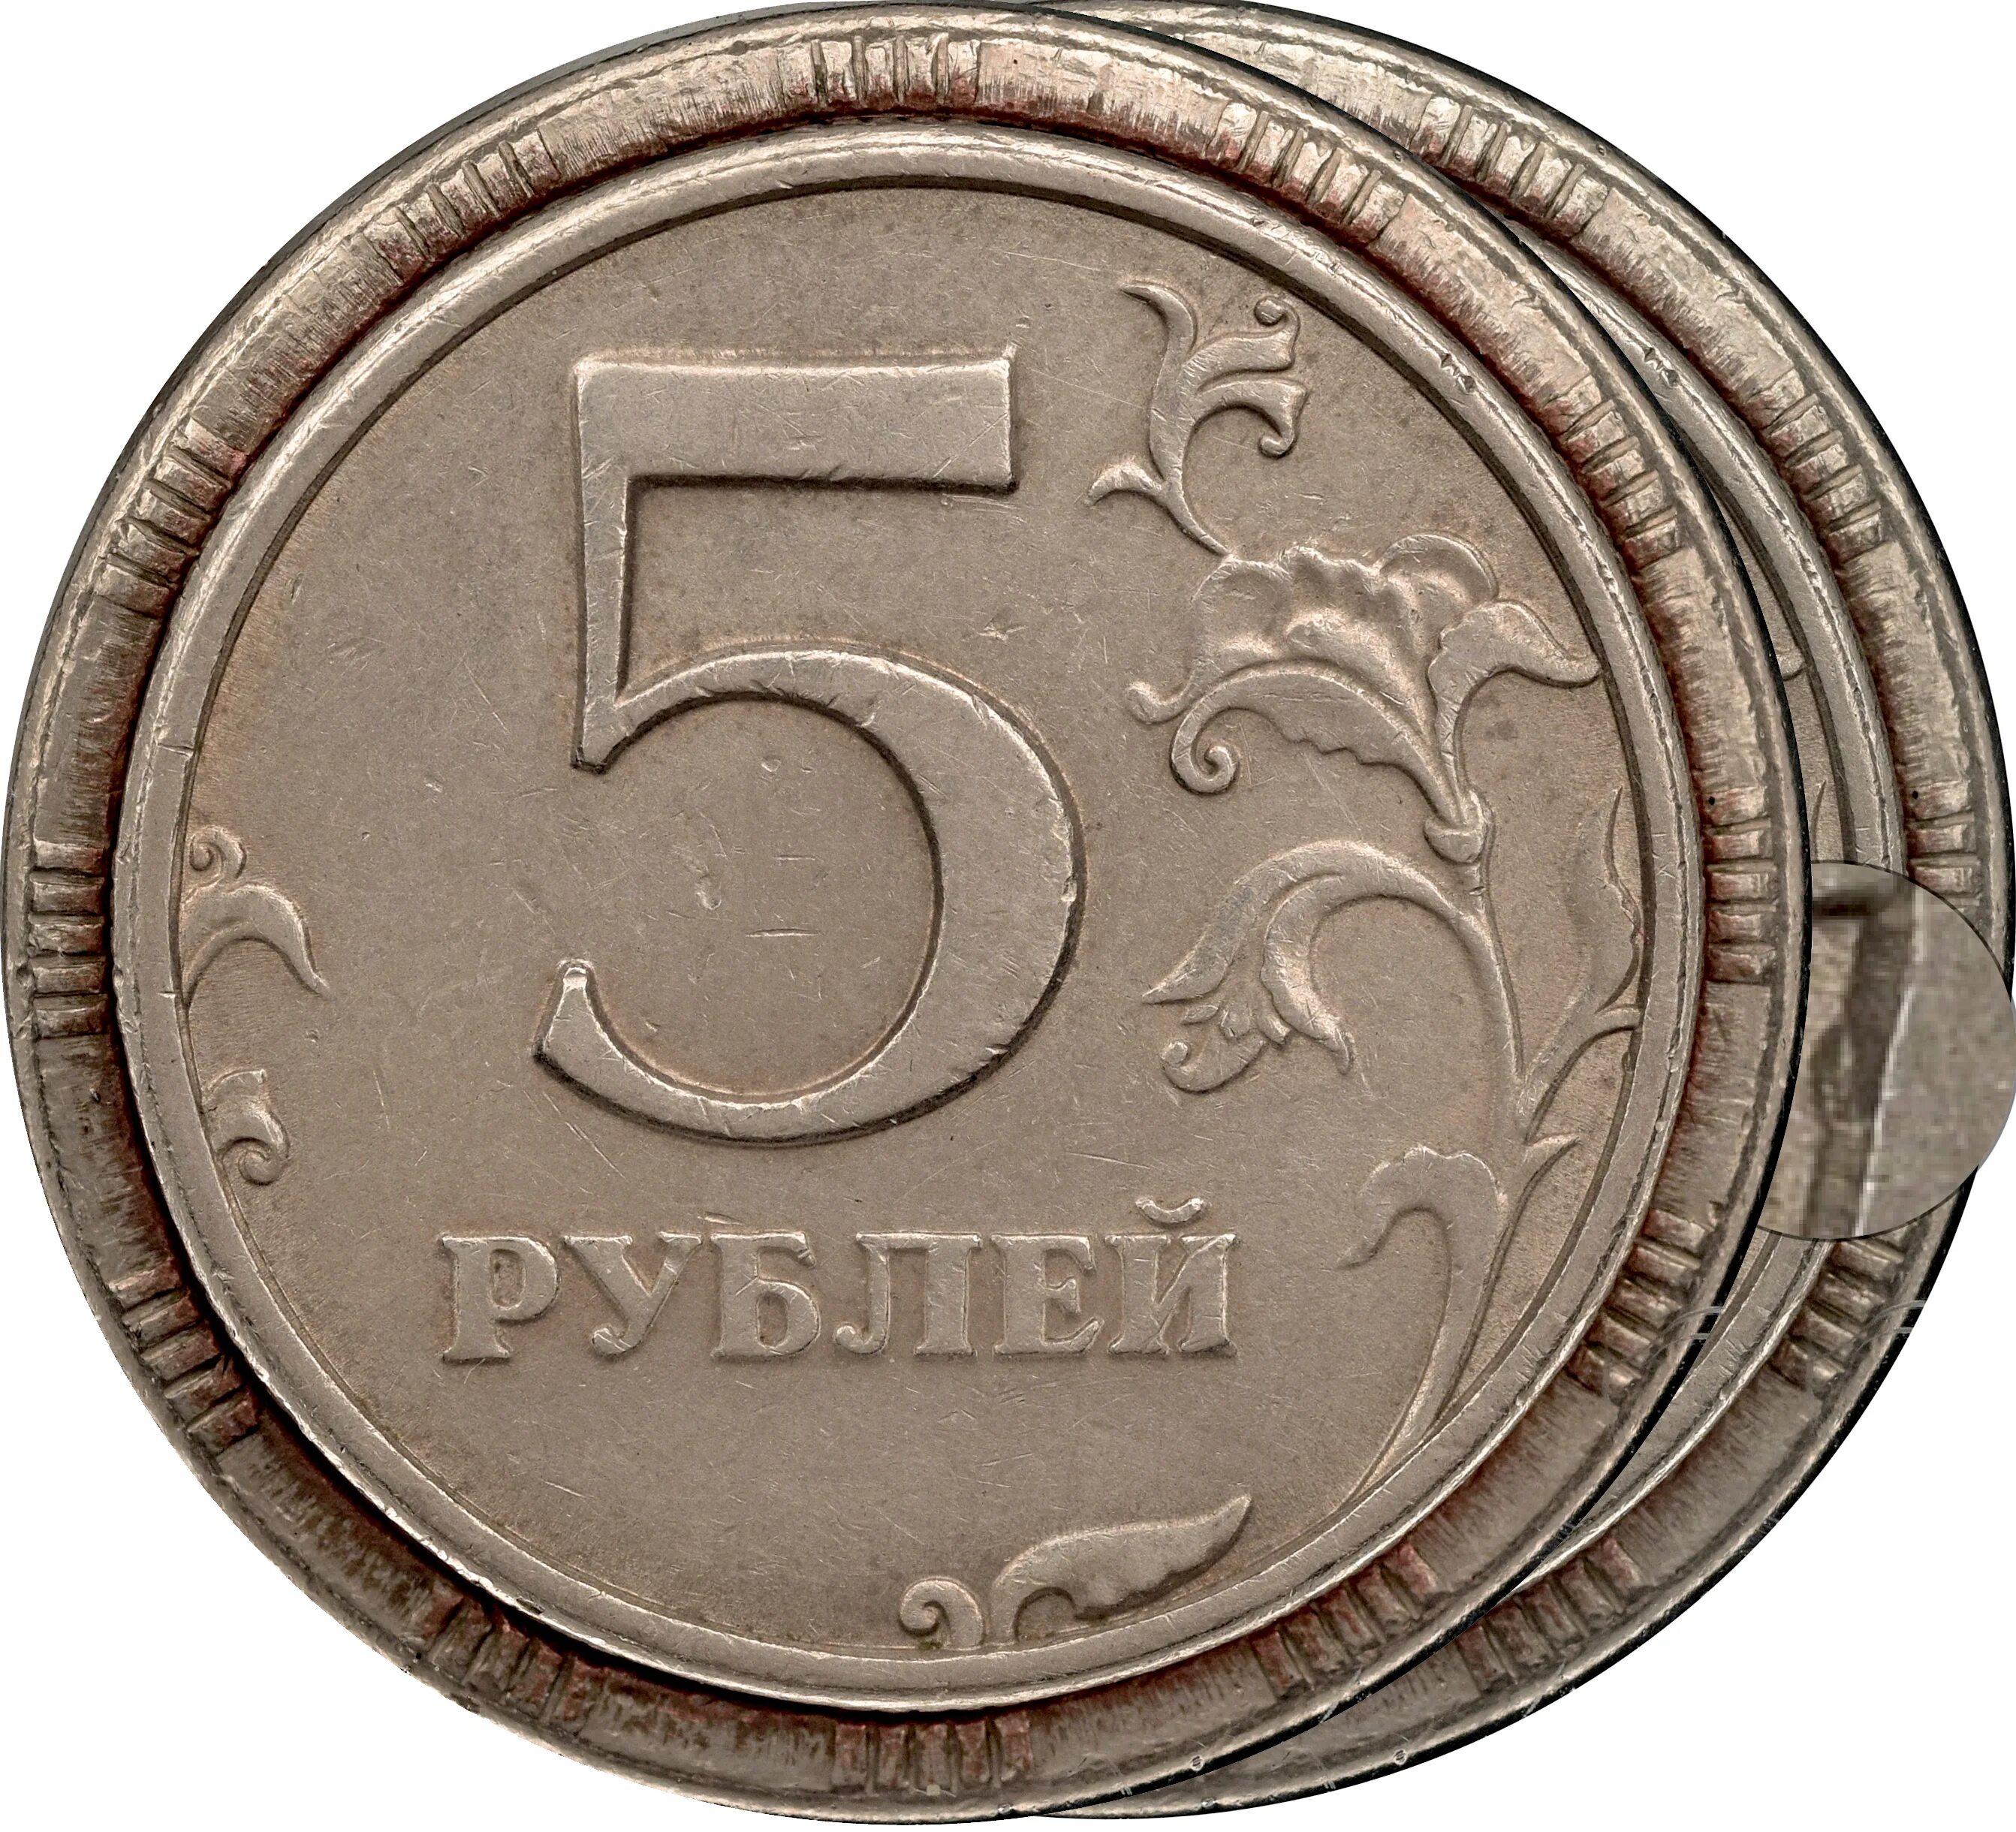 5 рублей 3 копейки. 5р. Пятачки монета Юбилейный. Пятачок монета современной. Монеты рубли пятаки десятки.